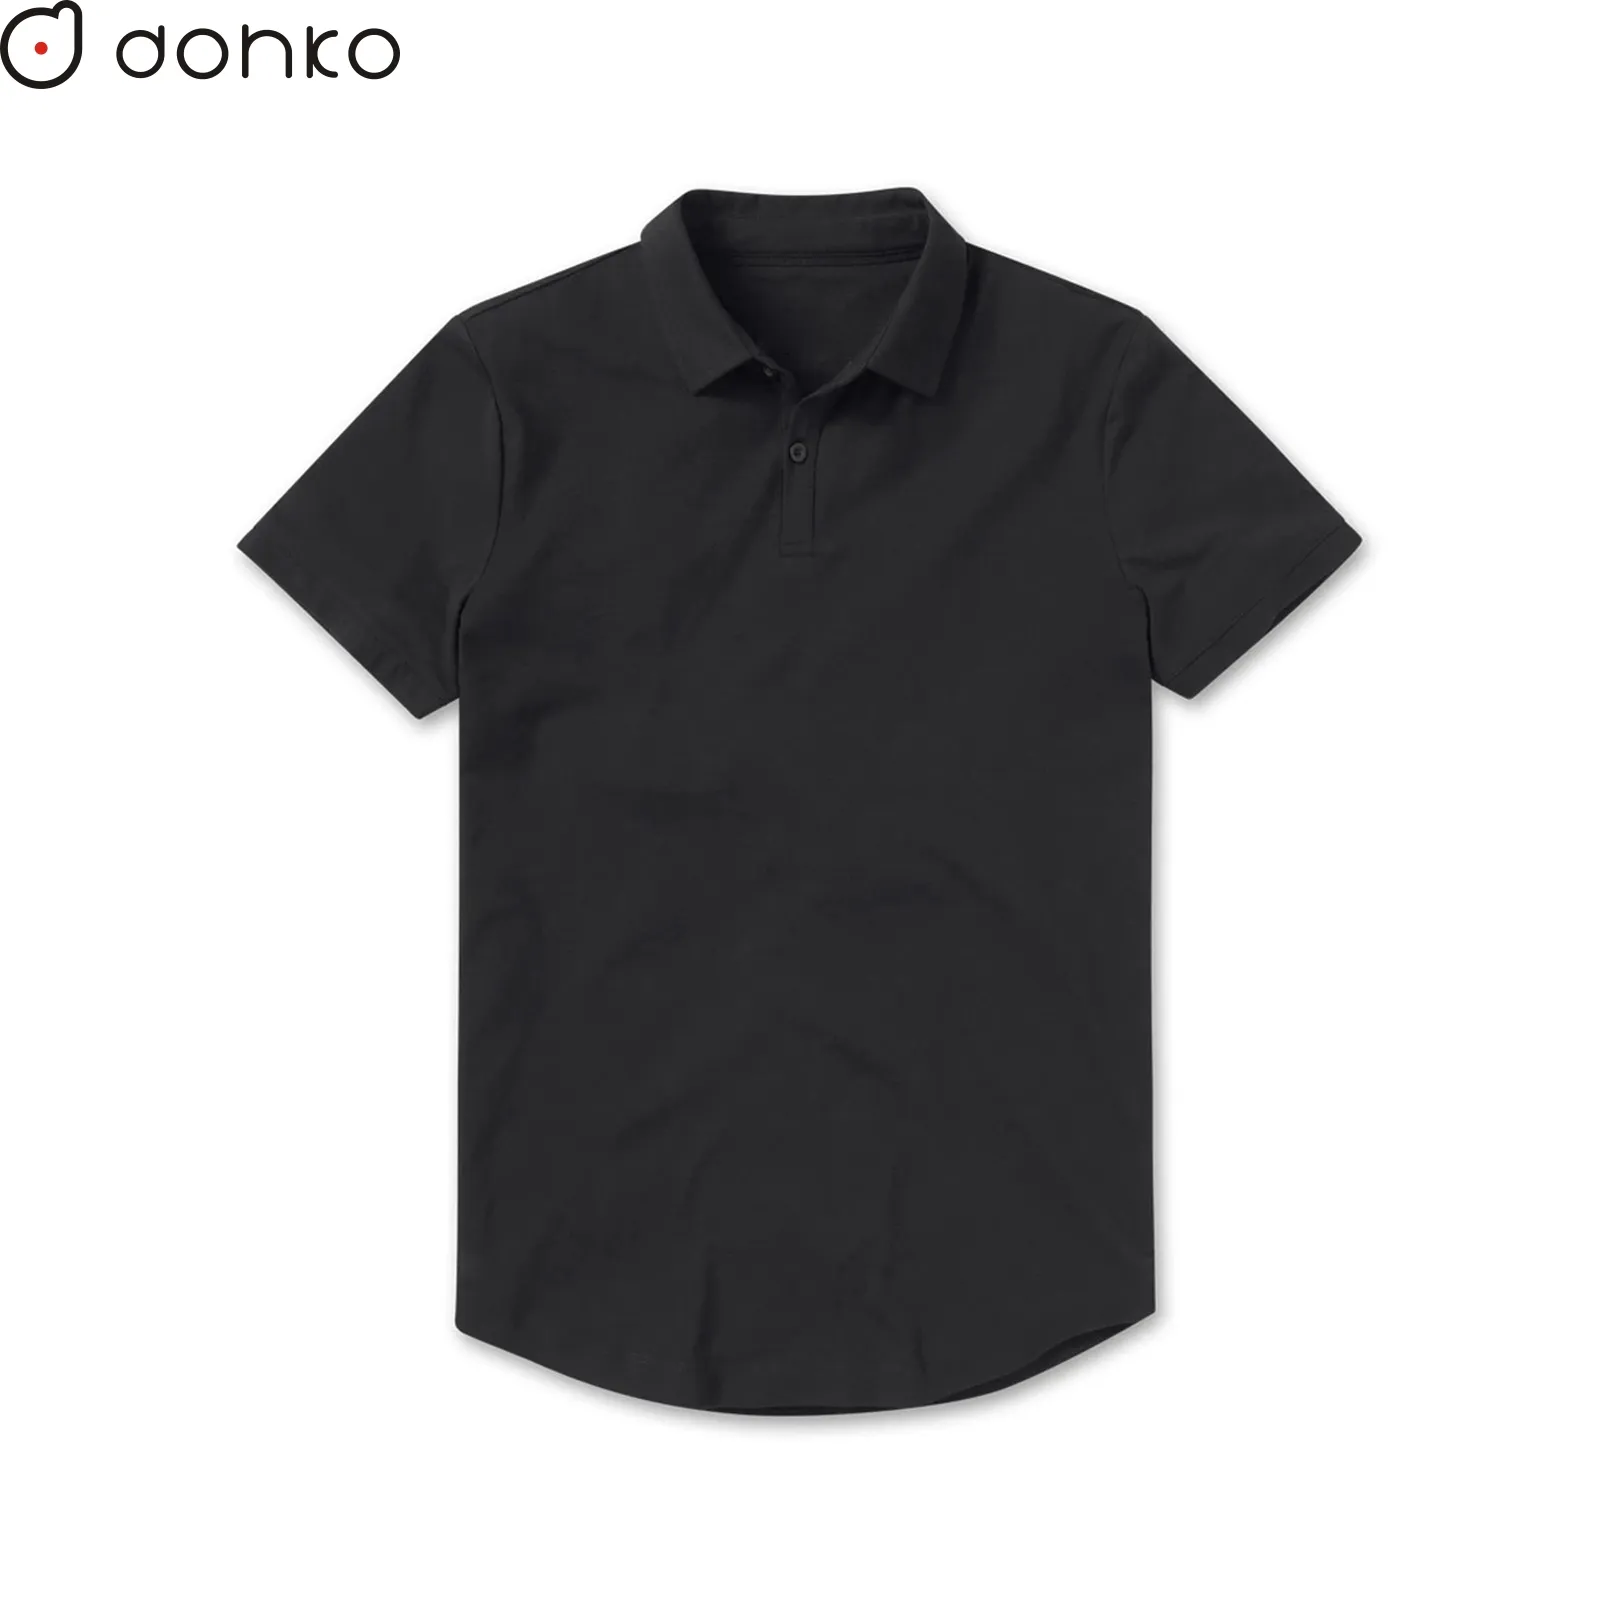 T-shirts lourds personnalisés avec logo imprimé ou broderie, tissu premium 100% coton